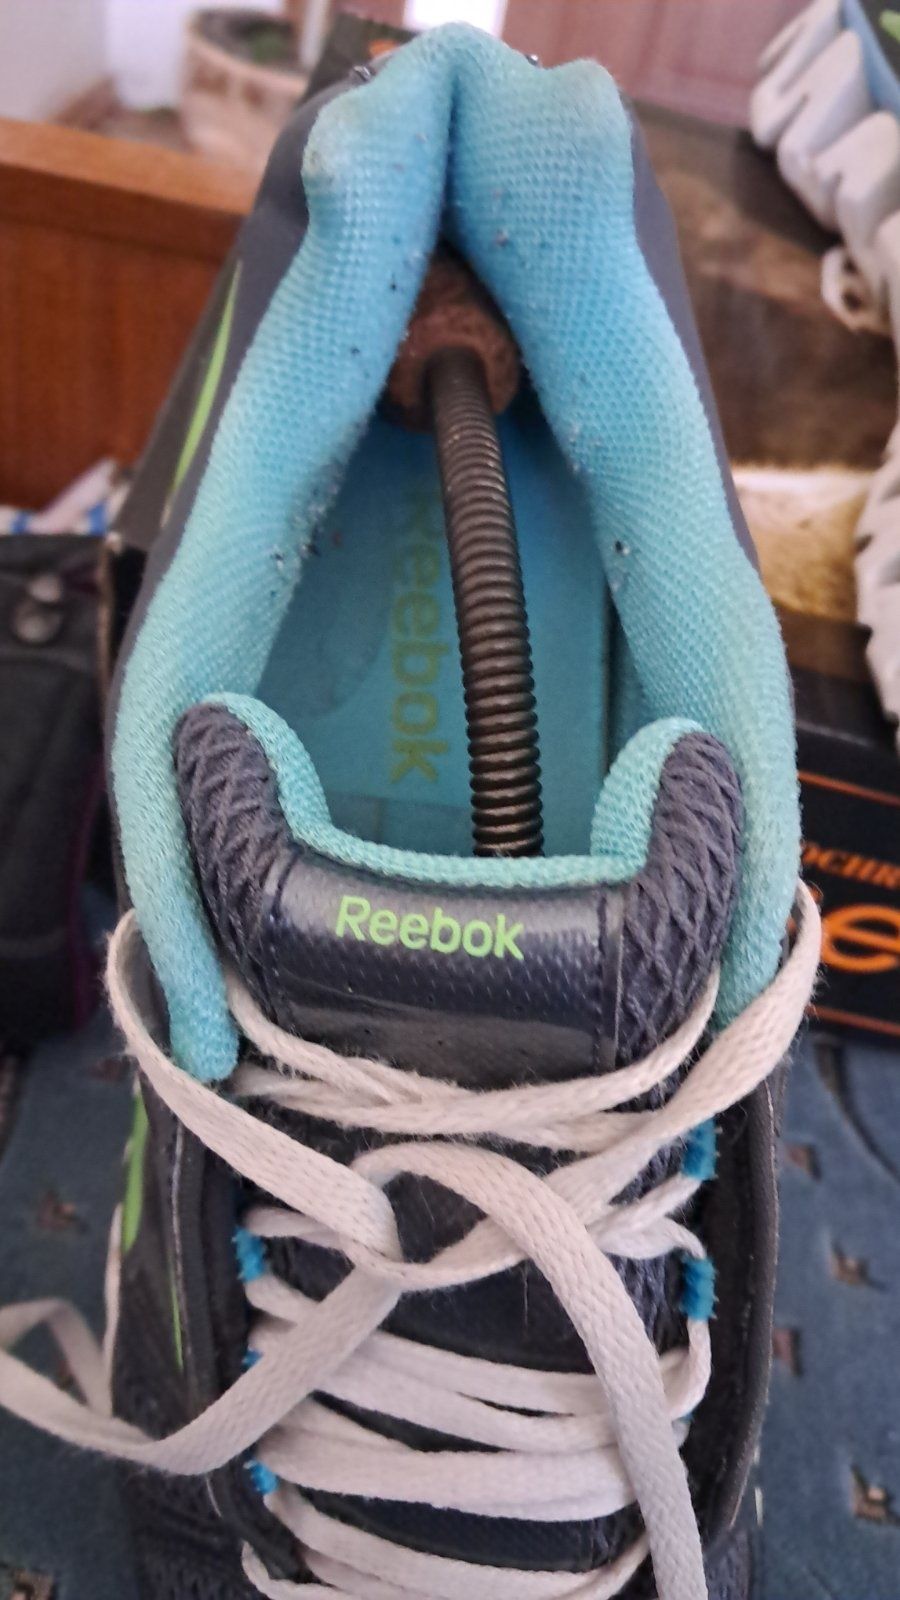 Кросівки спортивні Reebok. Розмір 43 вкладка 28см